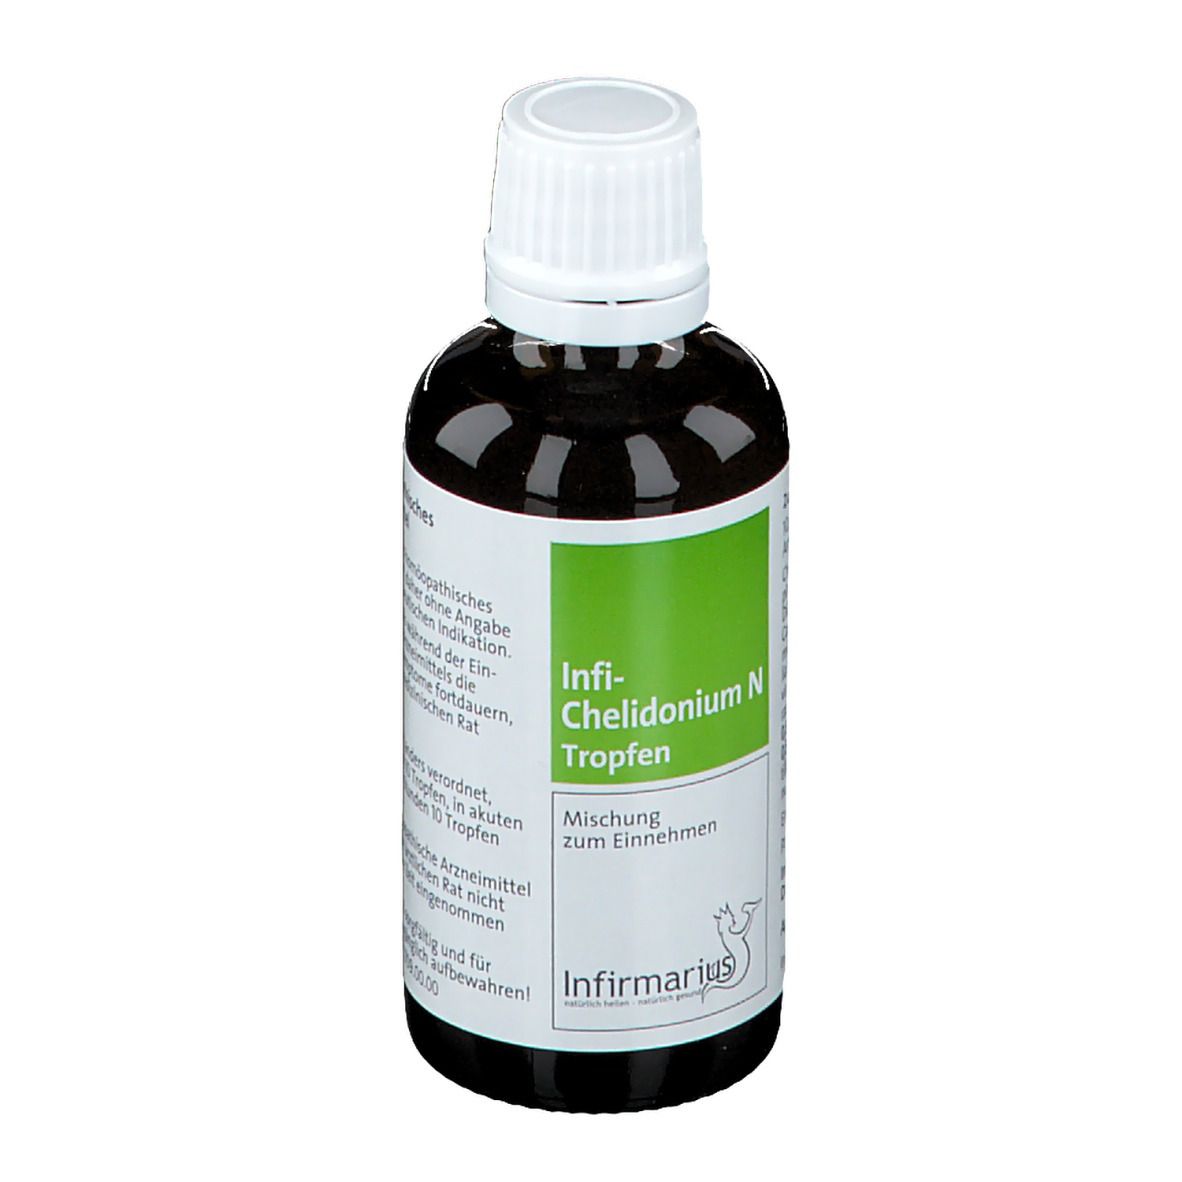 Infi-Chelidonium N Tropfen